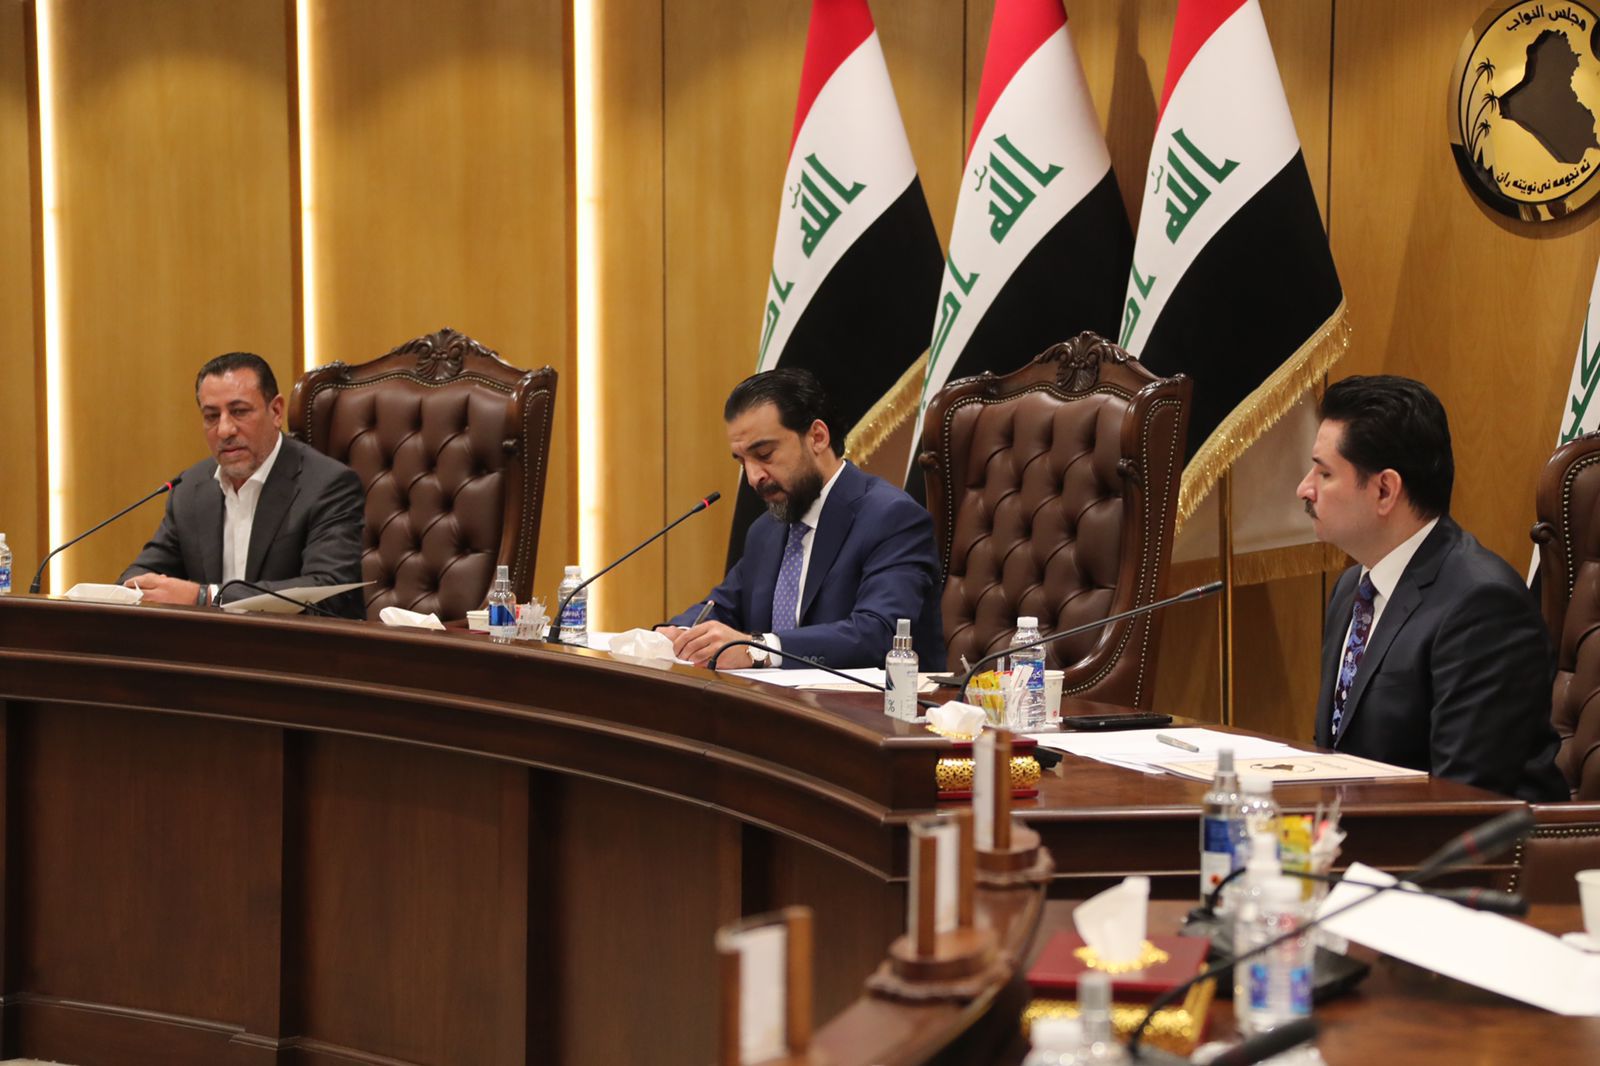 كتلة "إشراقة كانون" تضع شرطا لحضور جلسة انتخاب رئيس العراق او تنضم للمقاطعين 